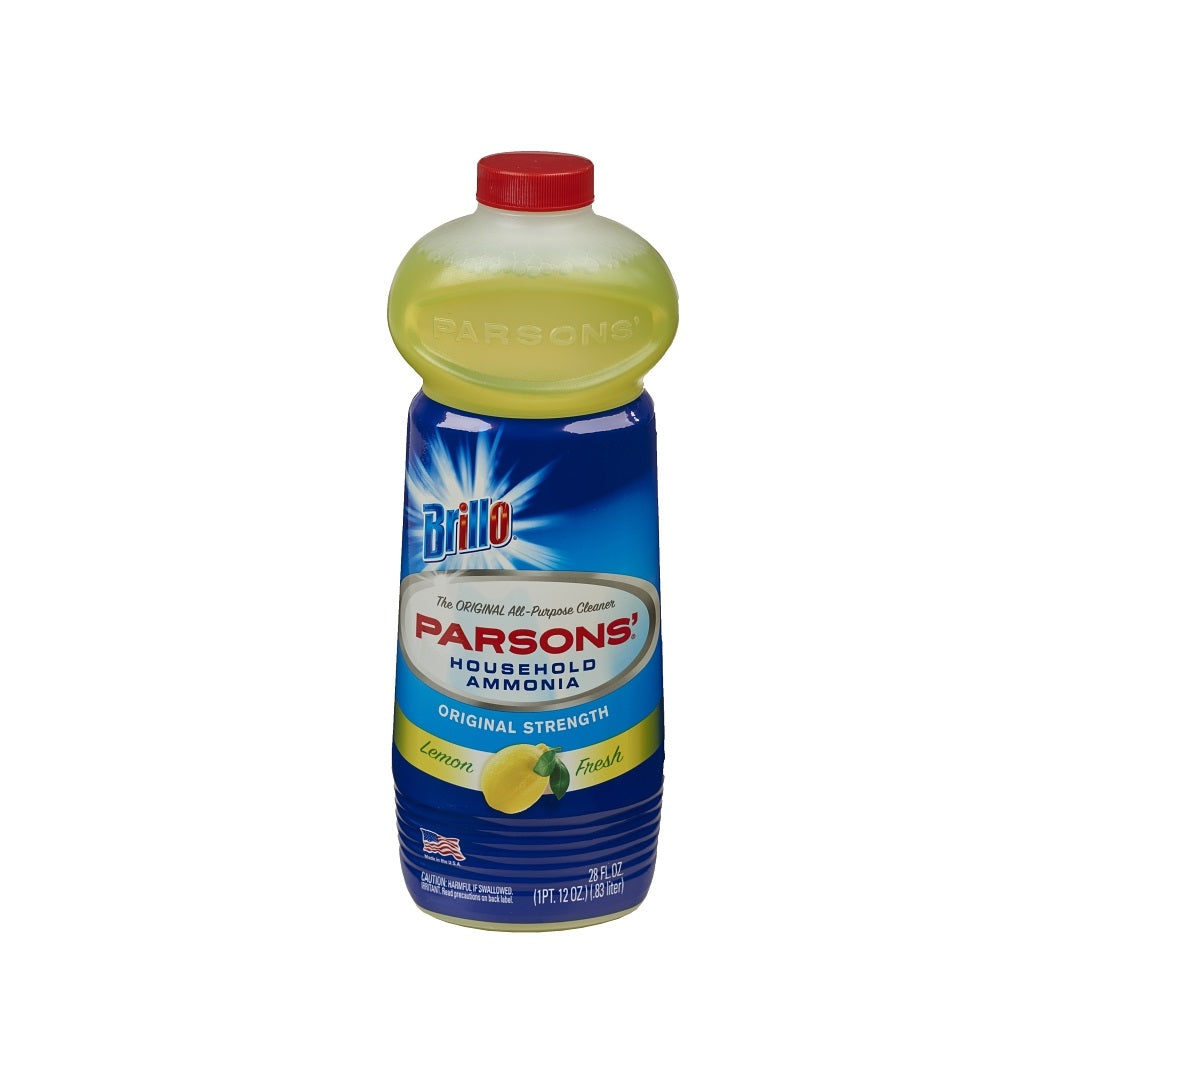 Brillio 33628 Parsons Ammonia All-Purpose Cleaner, 28 Oz, Lemon